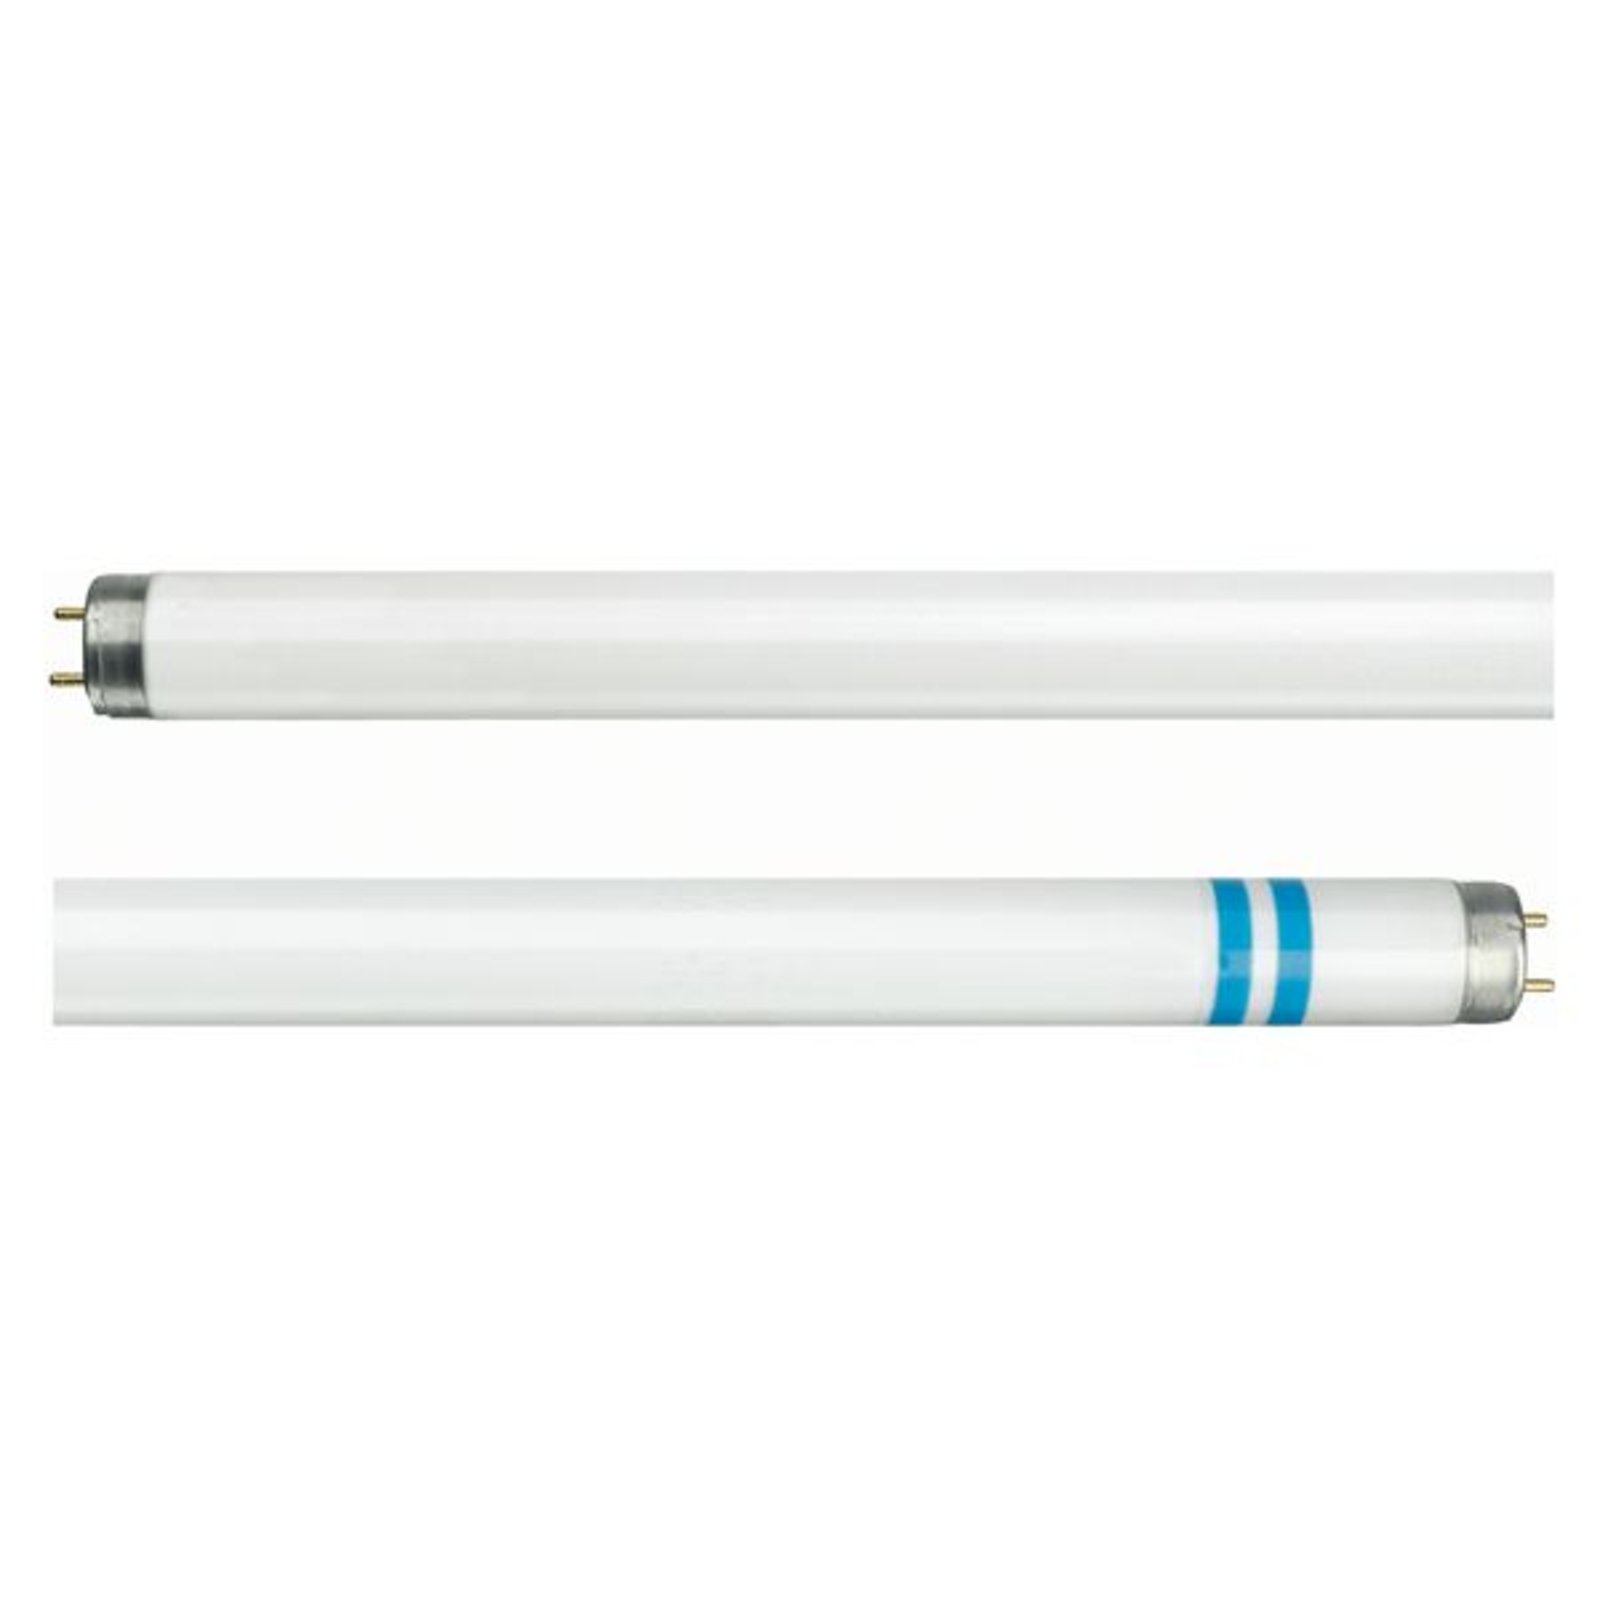 Philips G13 T8 tubo fluorescente protege astillado